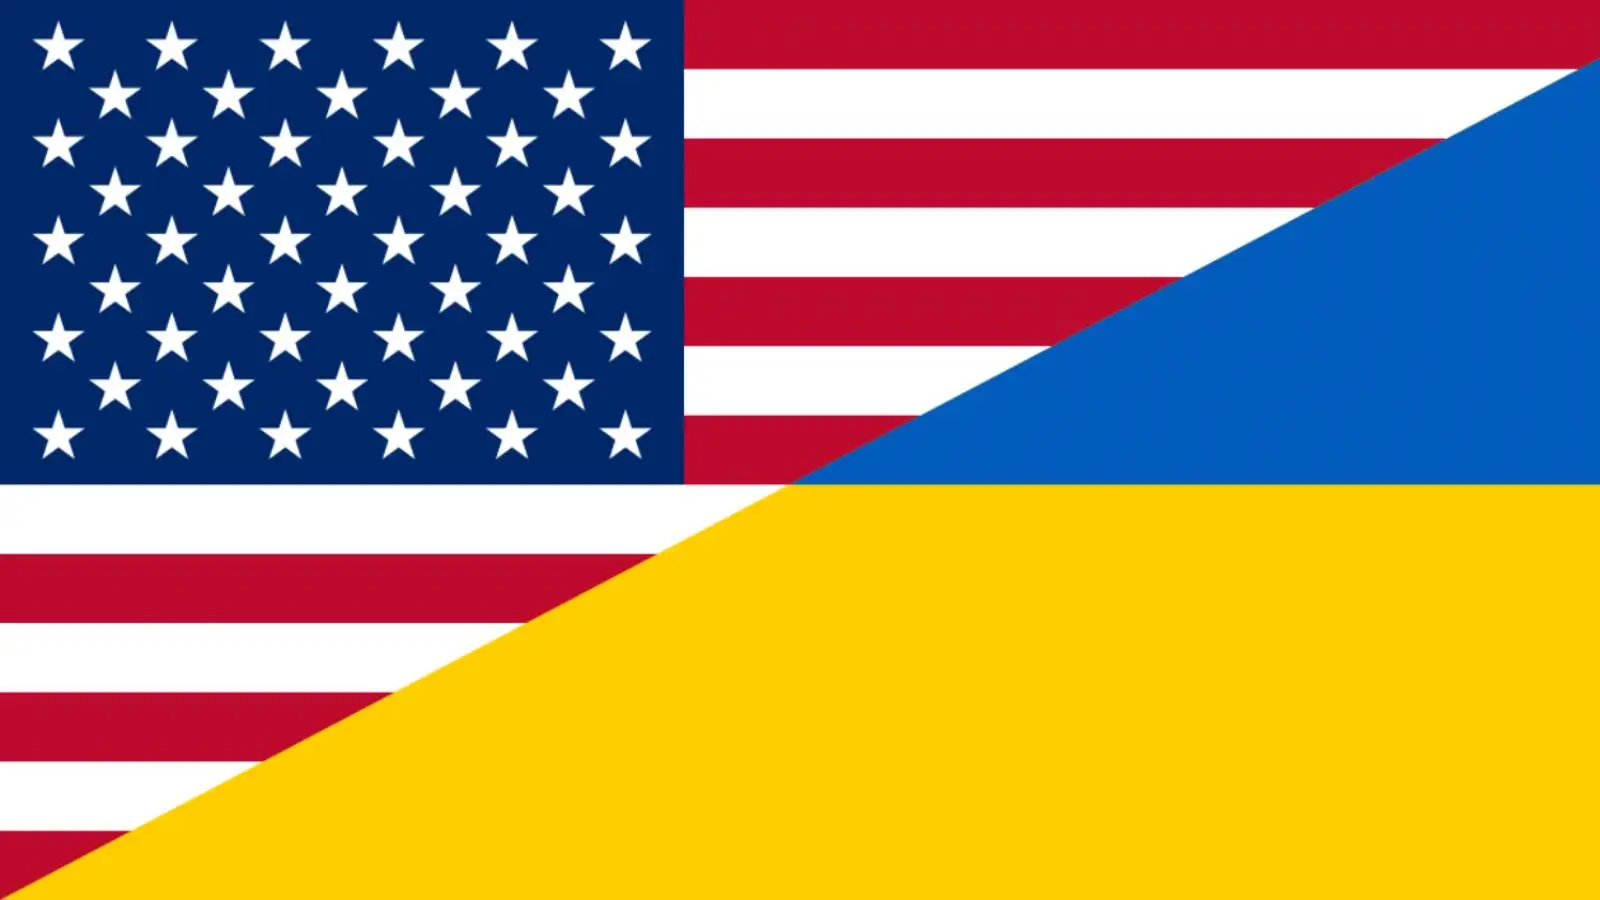 USA były zaskoczone decyzją Ukrainy o złożeniu wniosku o członkostwo w NATO